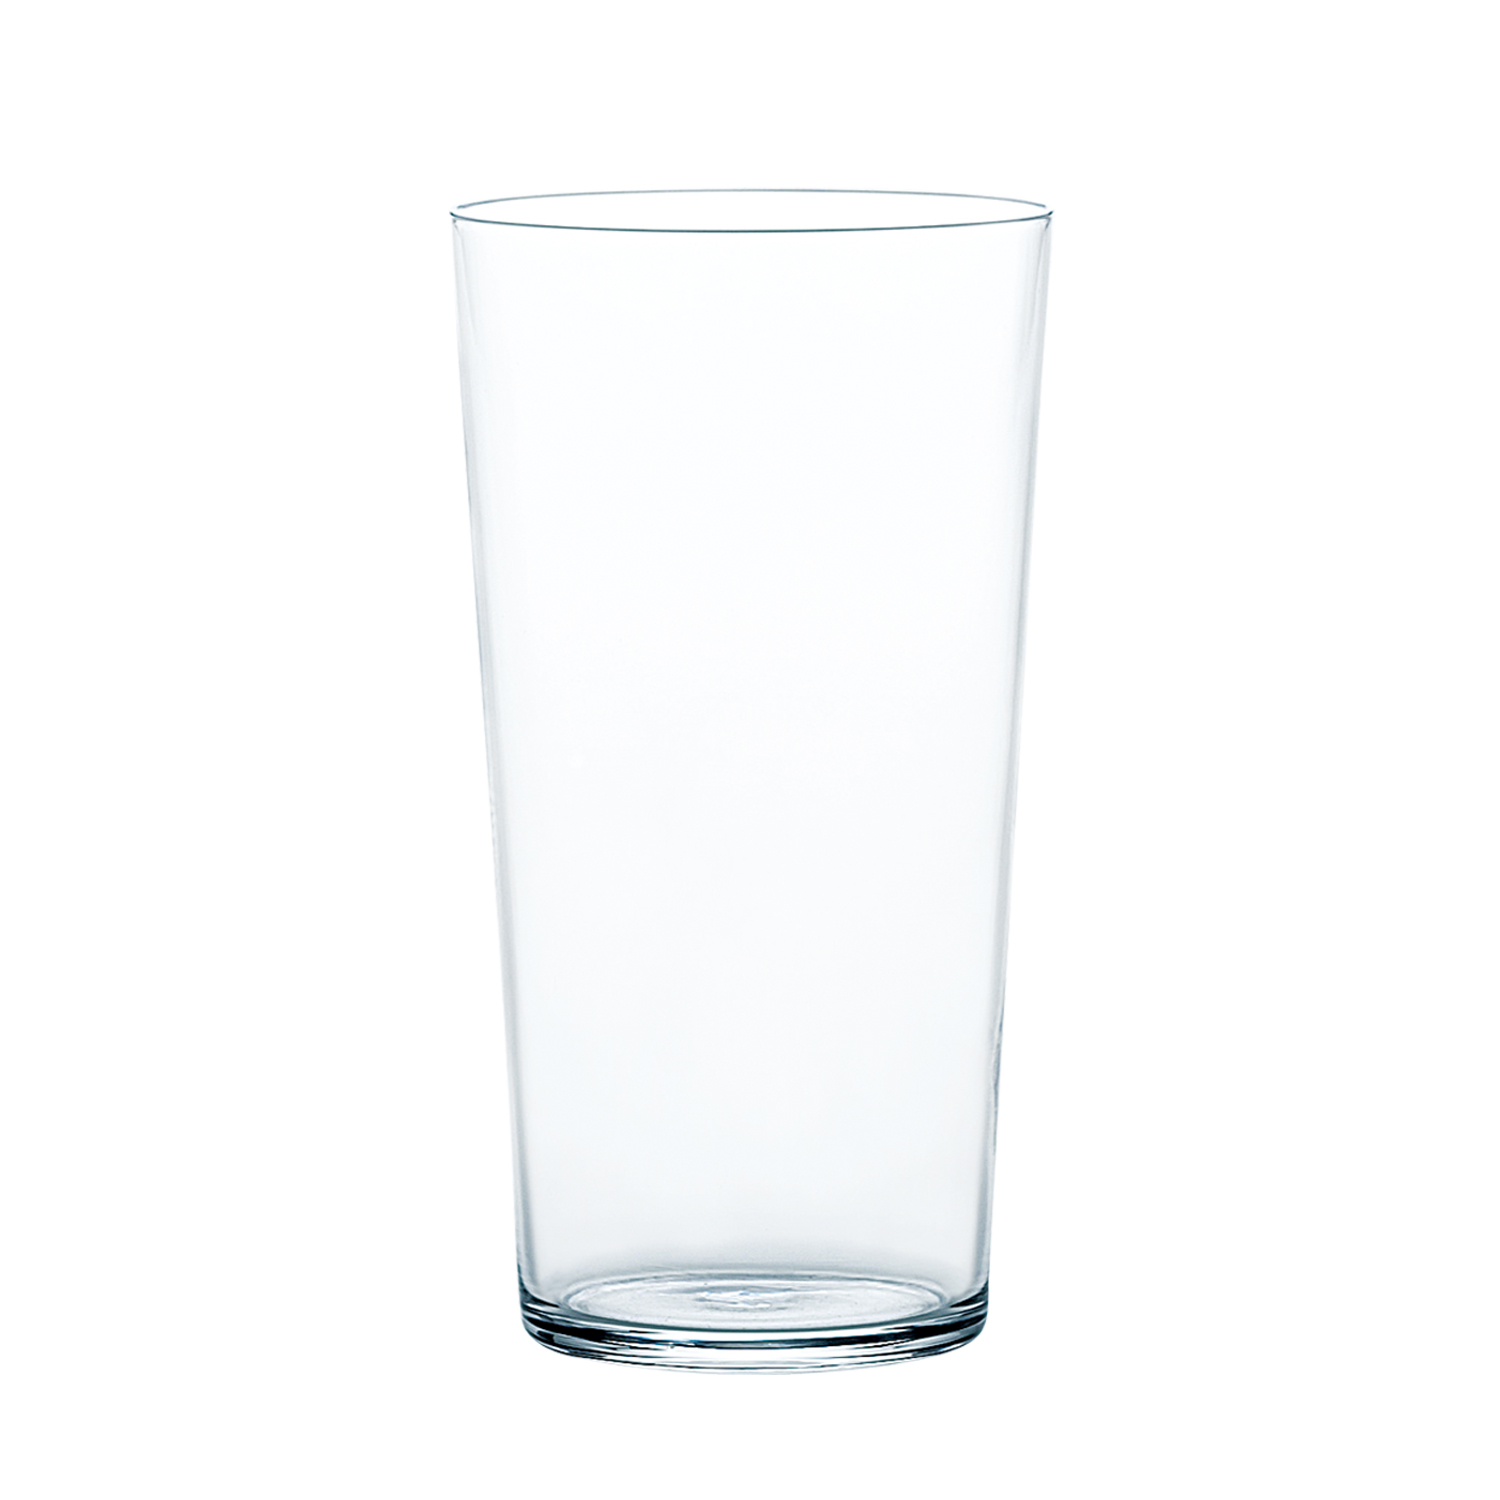 東洋佐々木ガラス ビールグラス・ジョッキ 透明 500ml 55485-1ct 24個